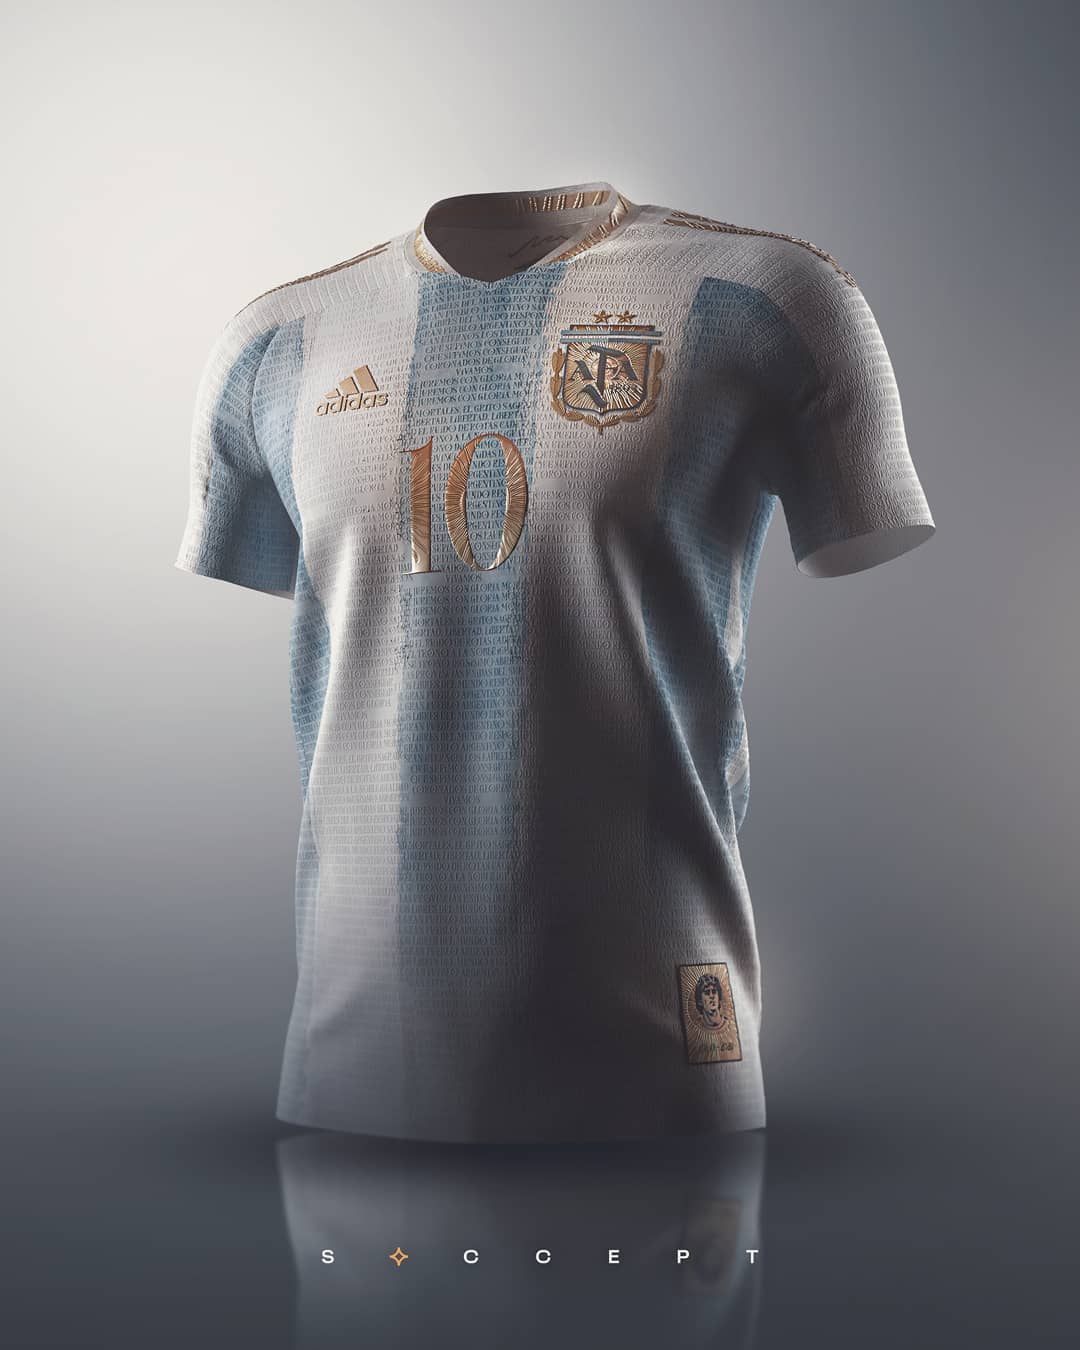 Así imaginó la camiseta de la selección argentina de fútbol un